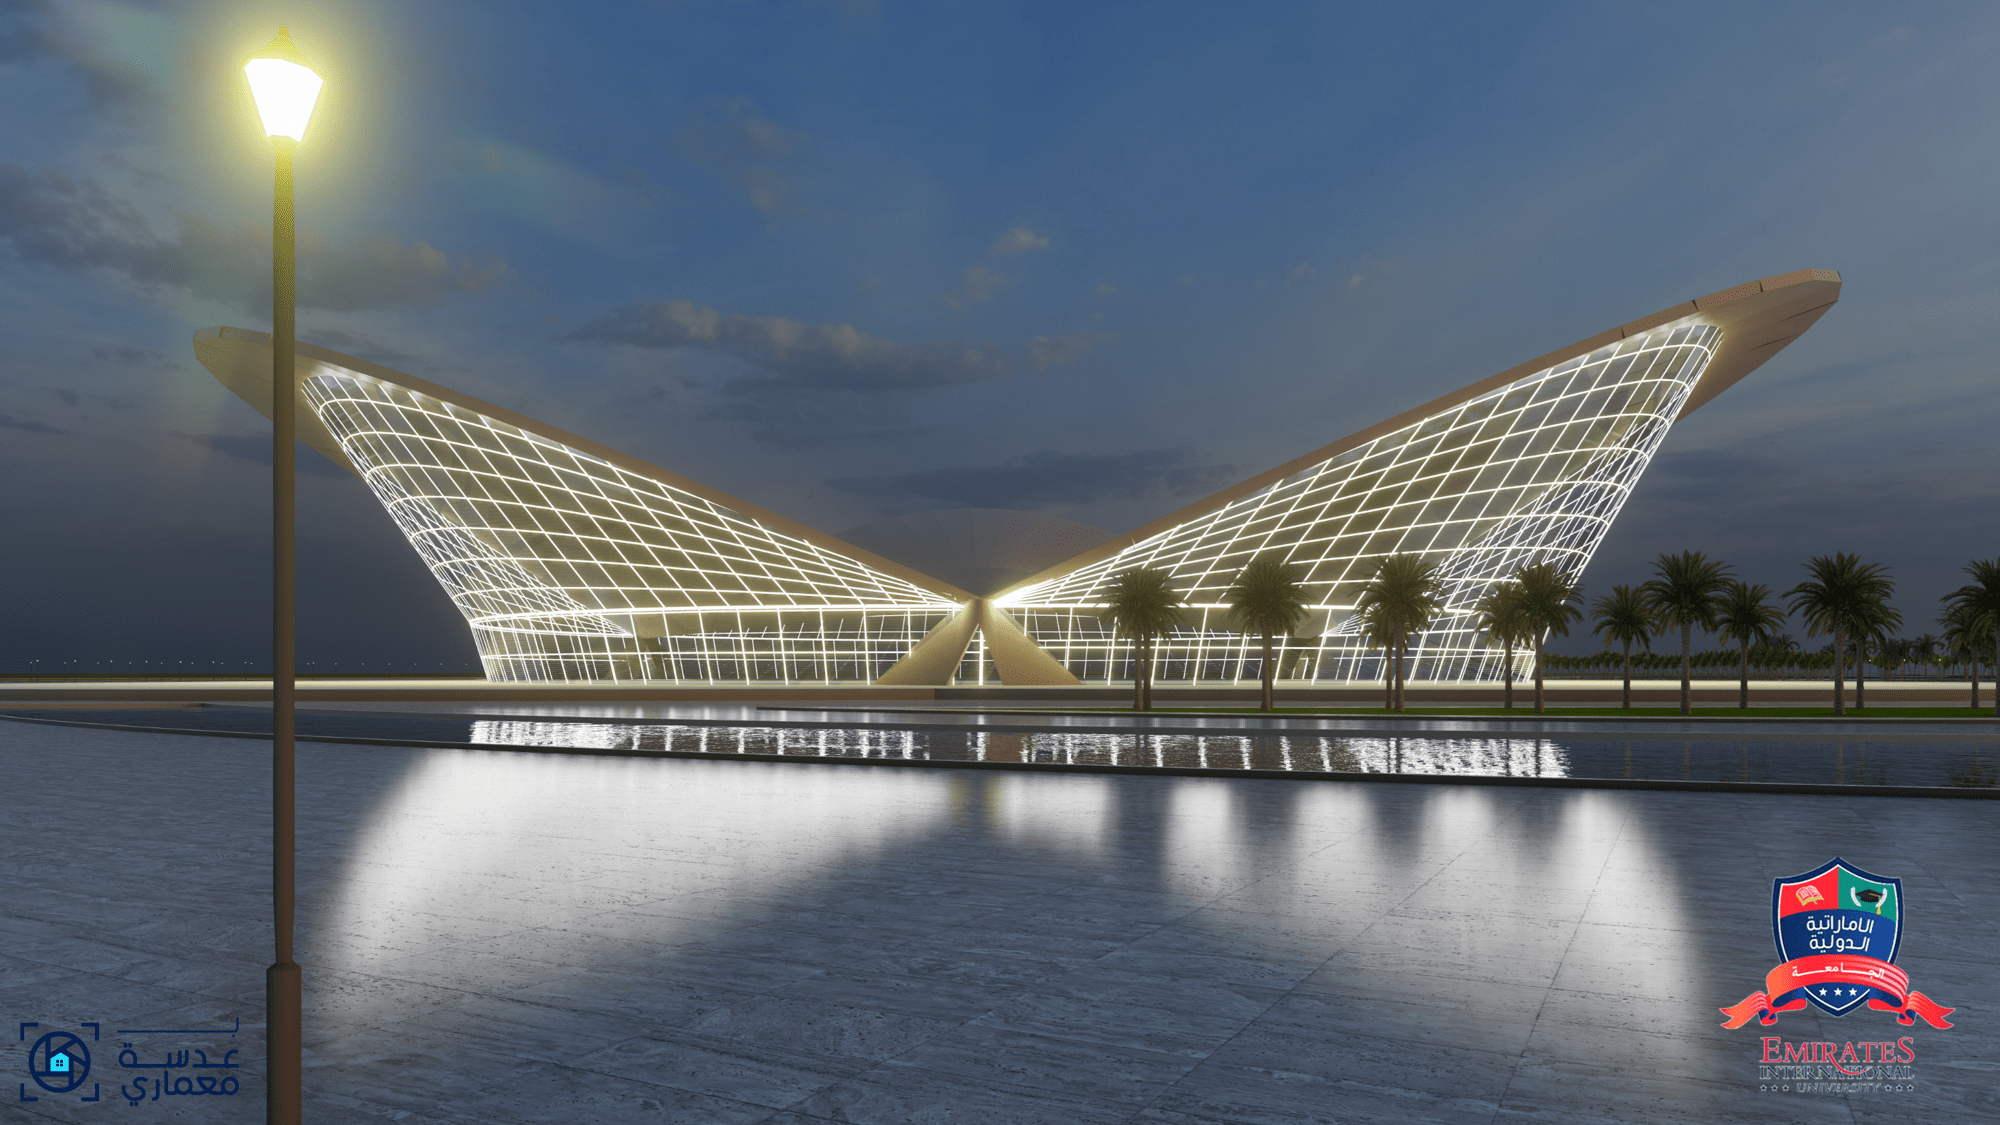 مشروع تصميم مطار صنعاء الدولي -مشروع تخرج 2020 حاصل على درجة الإمتياز-الجامعة الإماراتية الدولية-اليمن
-واجهات مبنى المطار-إعداد /مهندس غسان حمود قيس